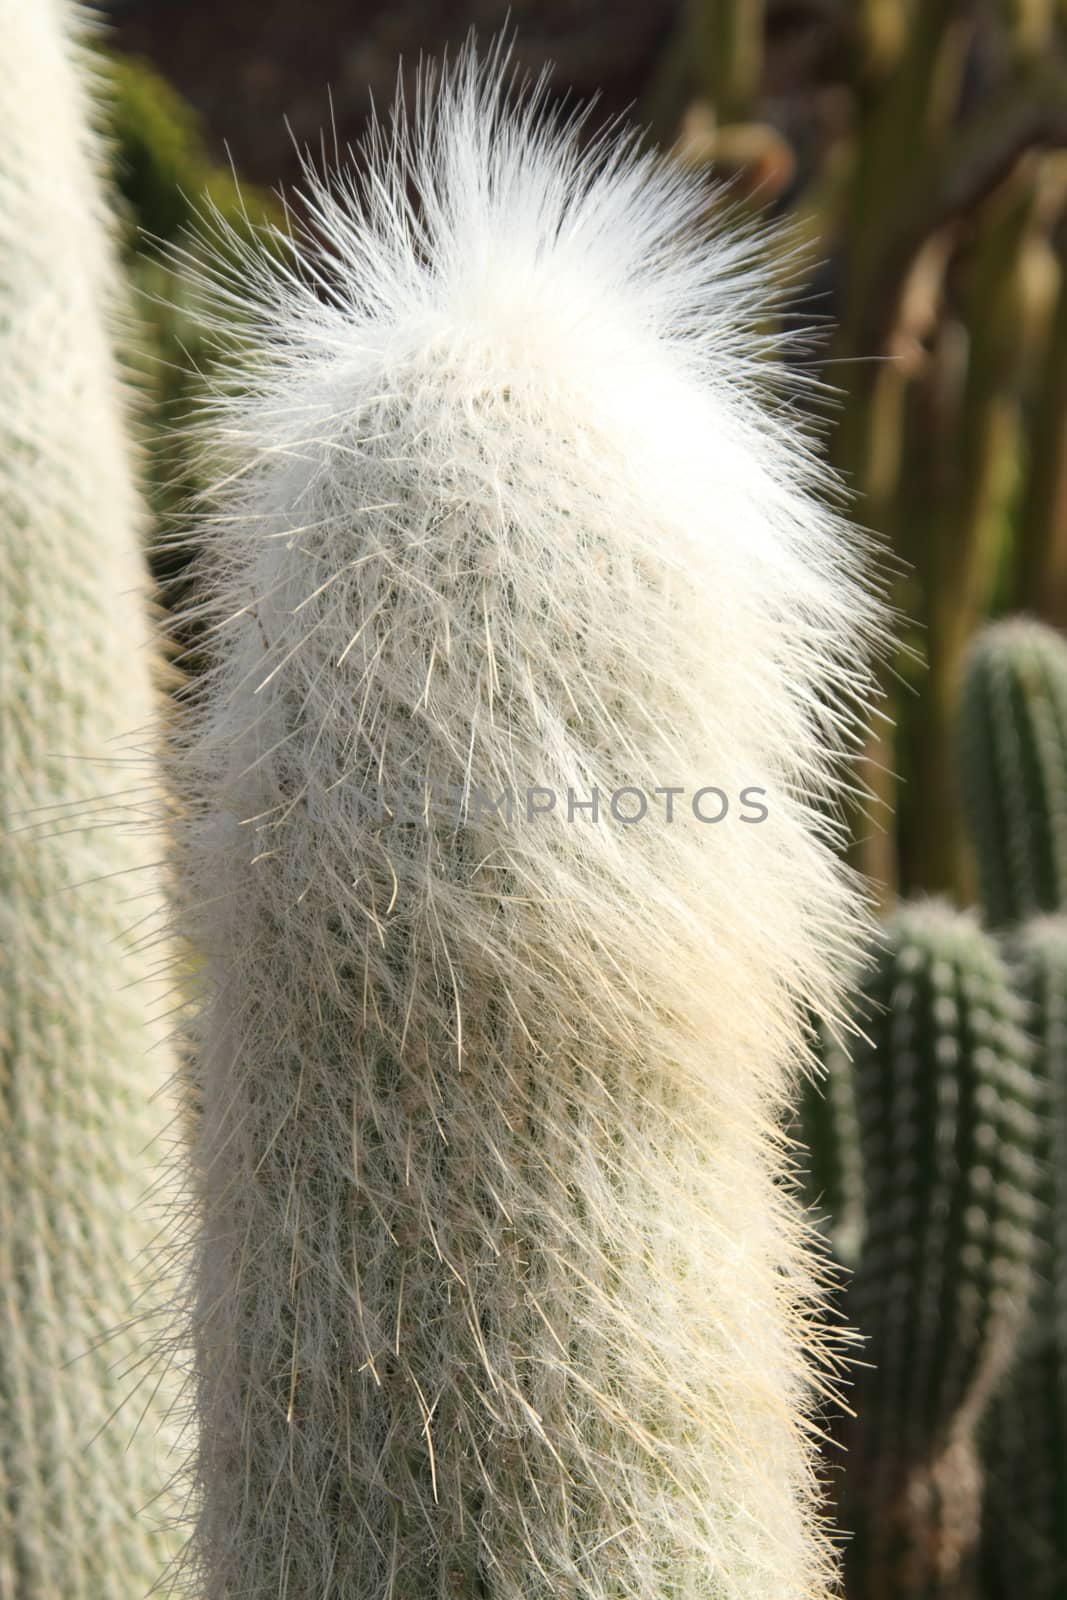 Cephalocereus senelis cactus by mitzy